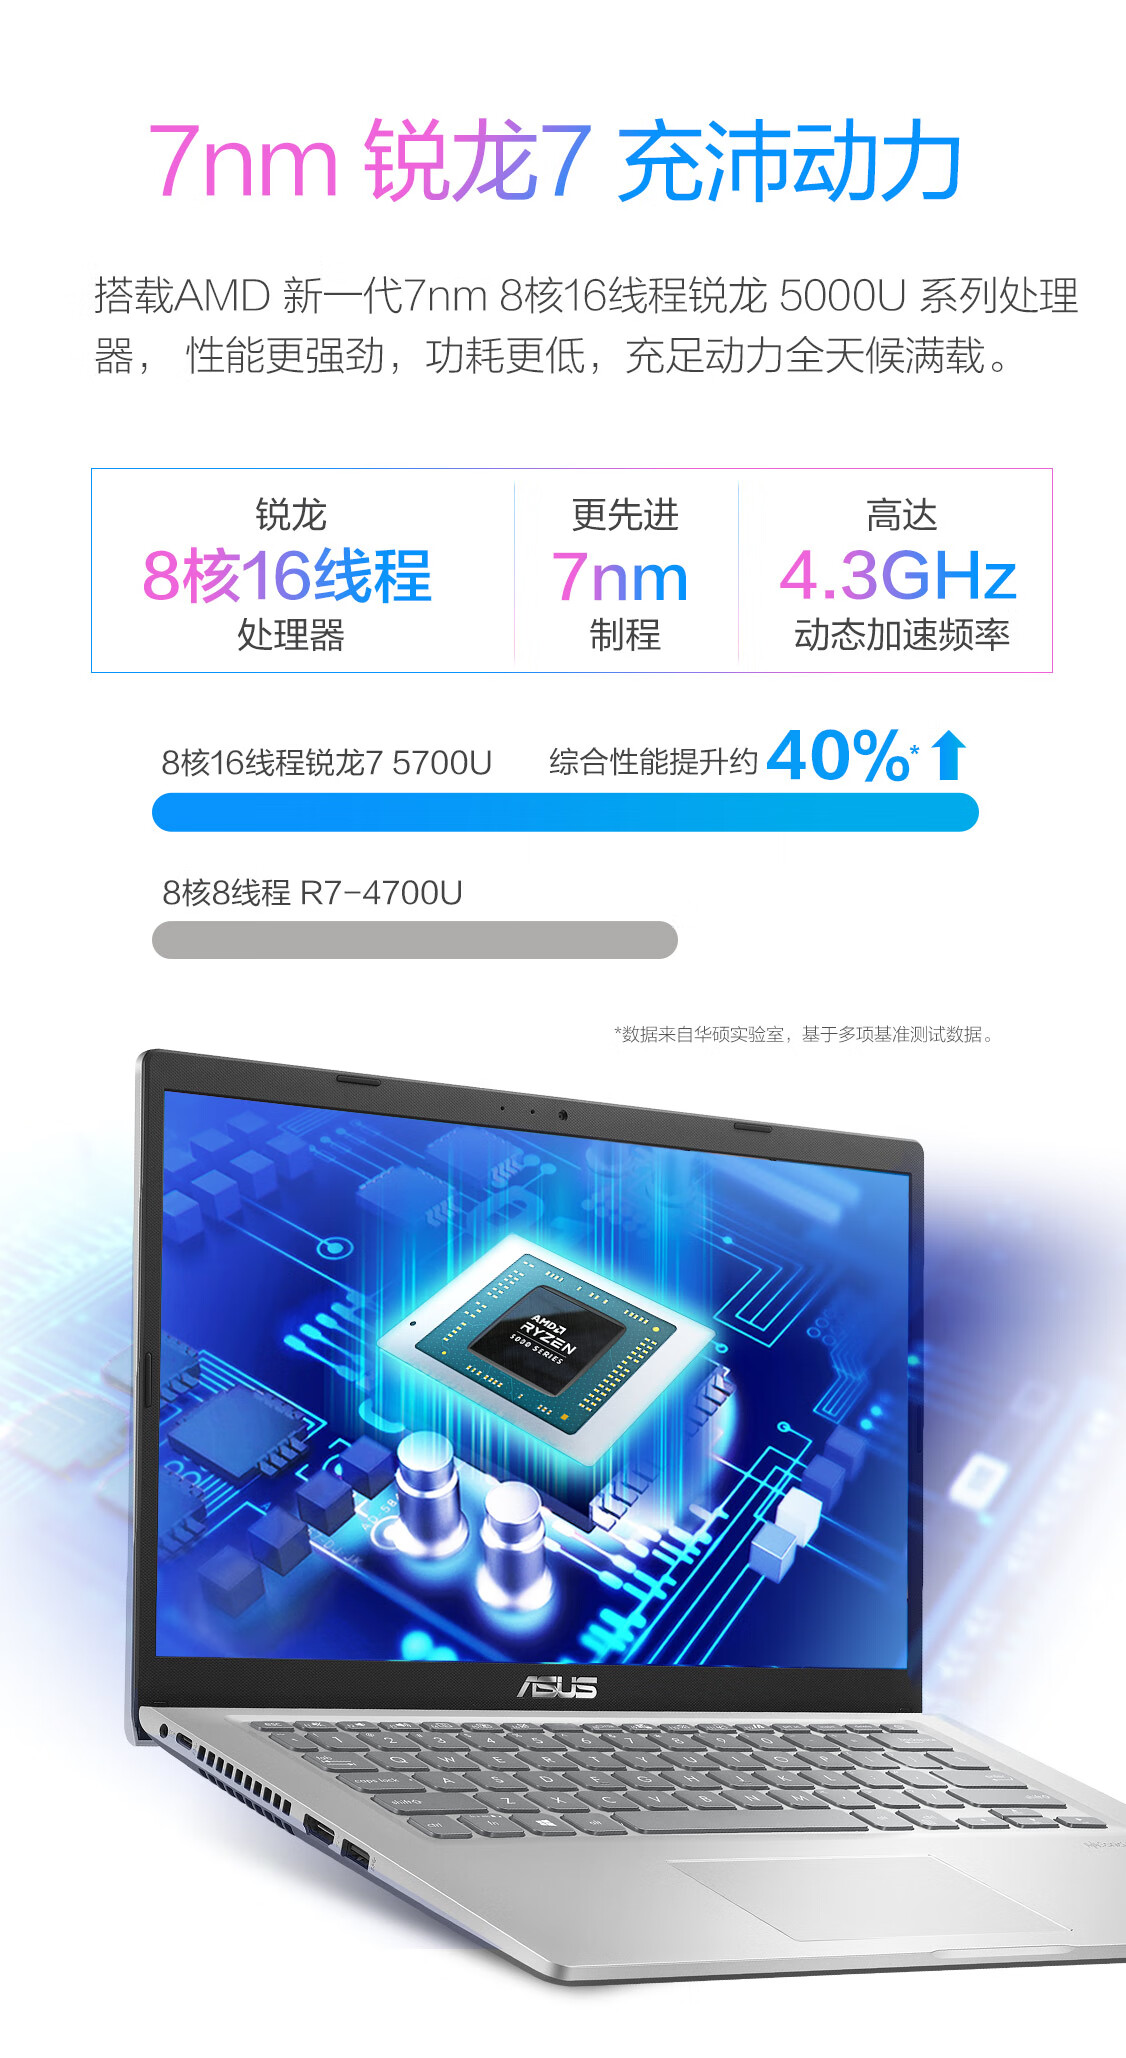 华硕(ASUS) 顽石七代 7nm8核高性能锐龙R7 14.0英寸笔记本电脑(R7-5700U 8G 512SSD PCIe NVMe IPS防眩光)银